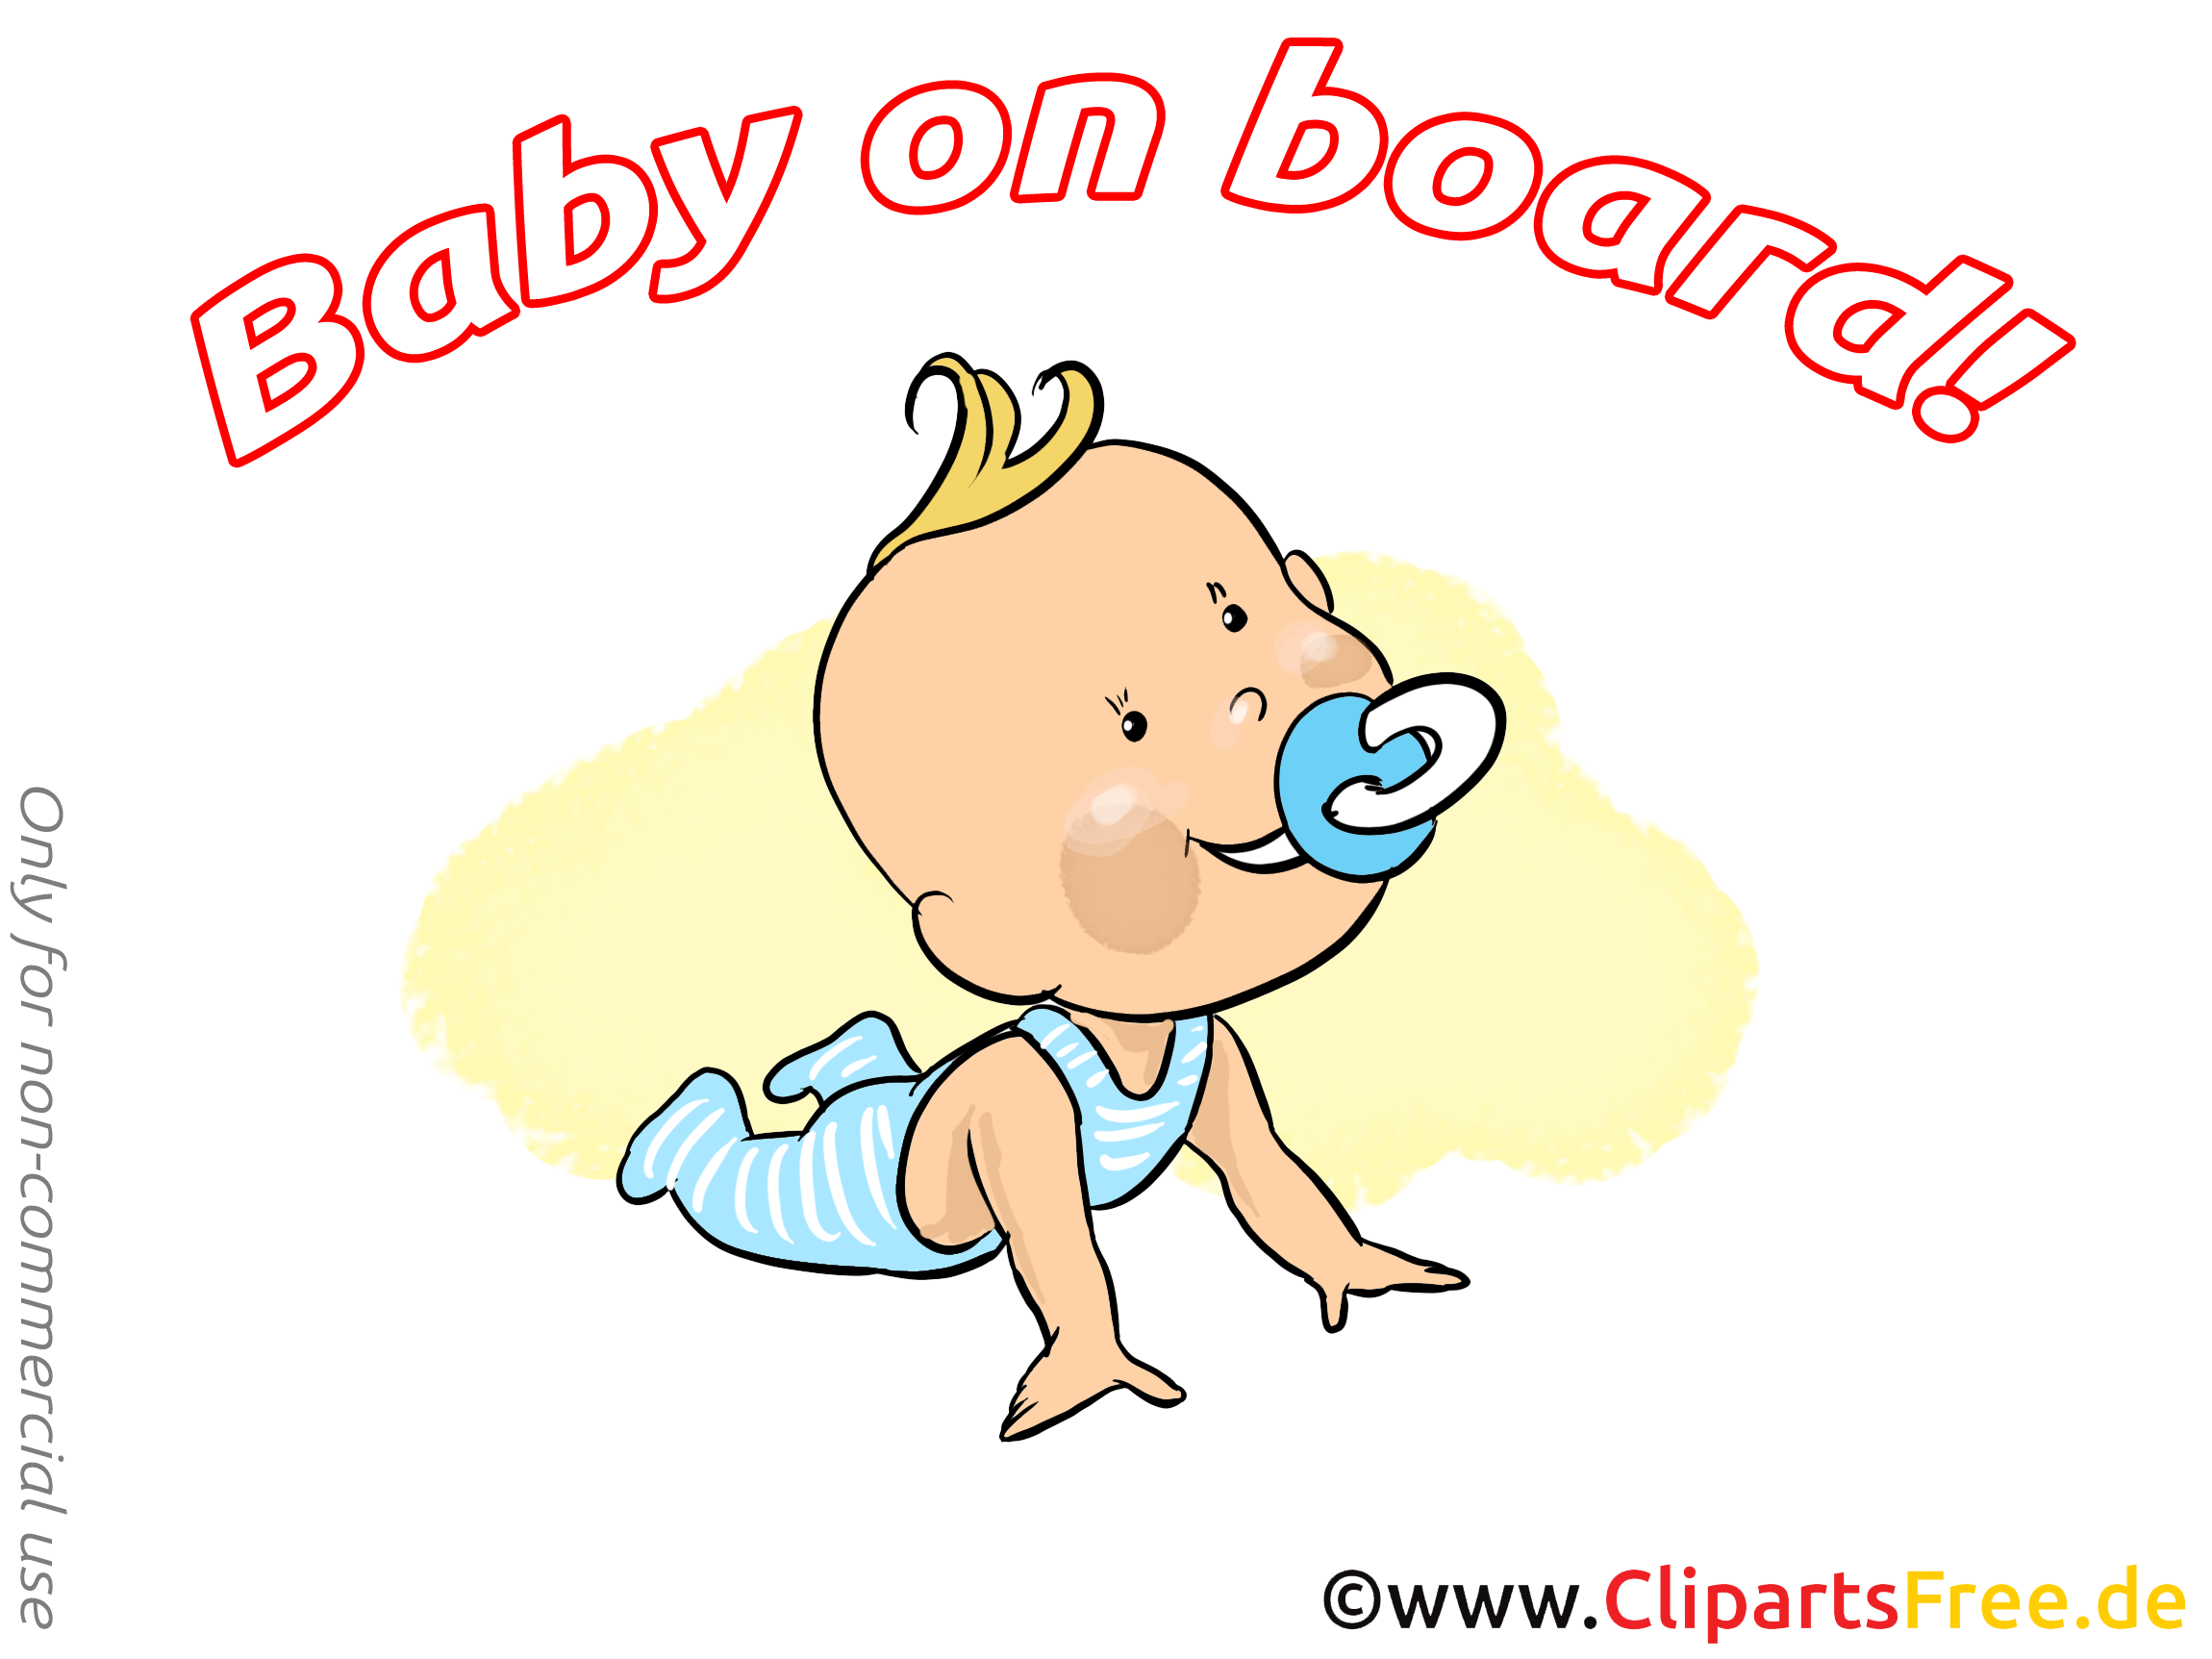 Enfant image gratuite – Bébé à bord clipart